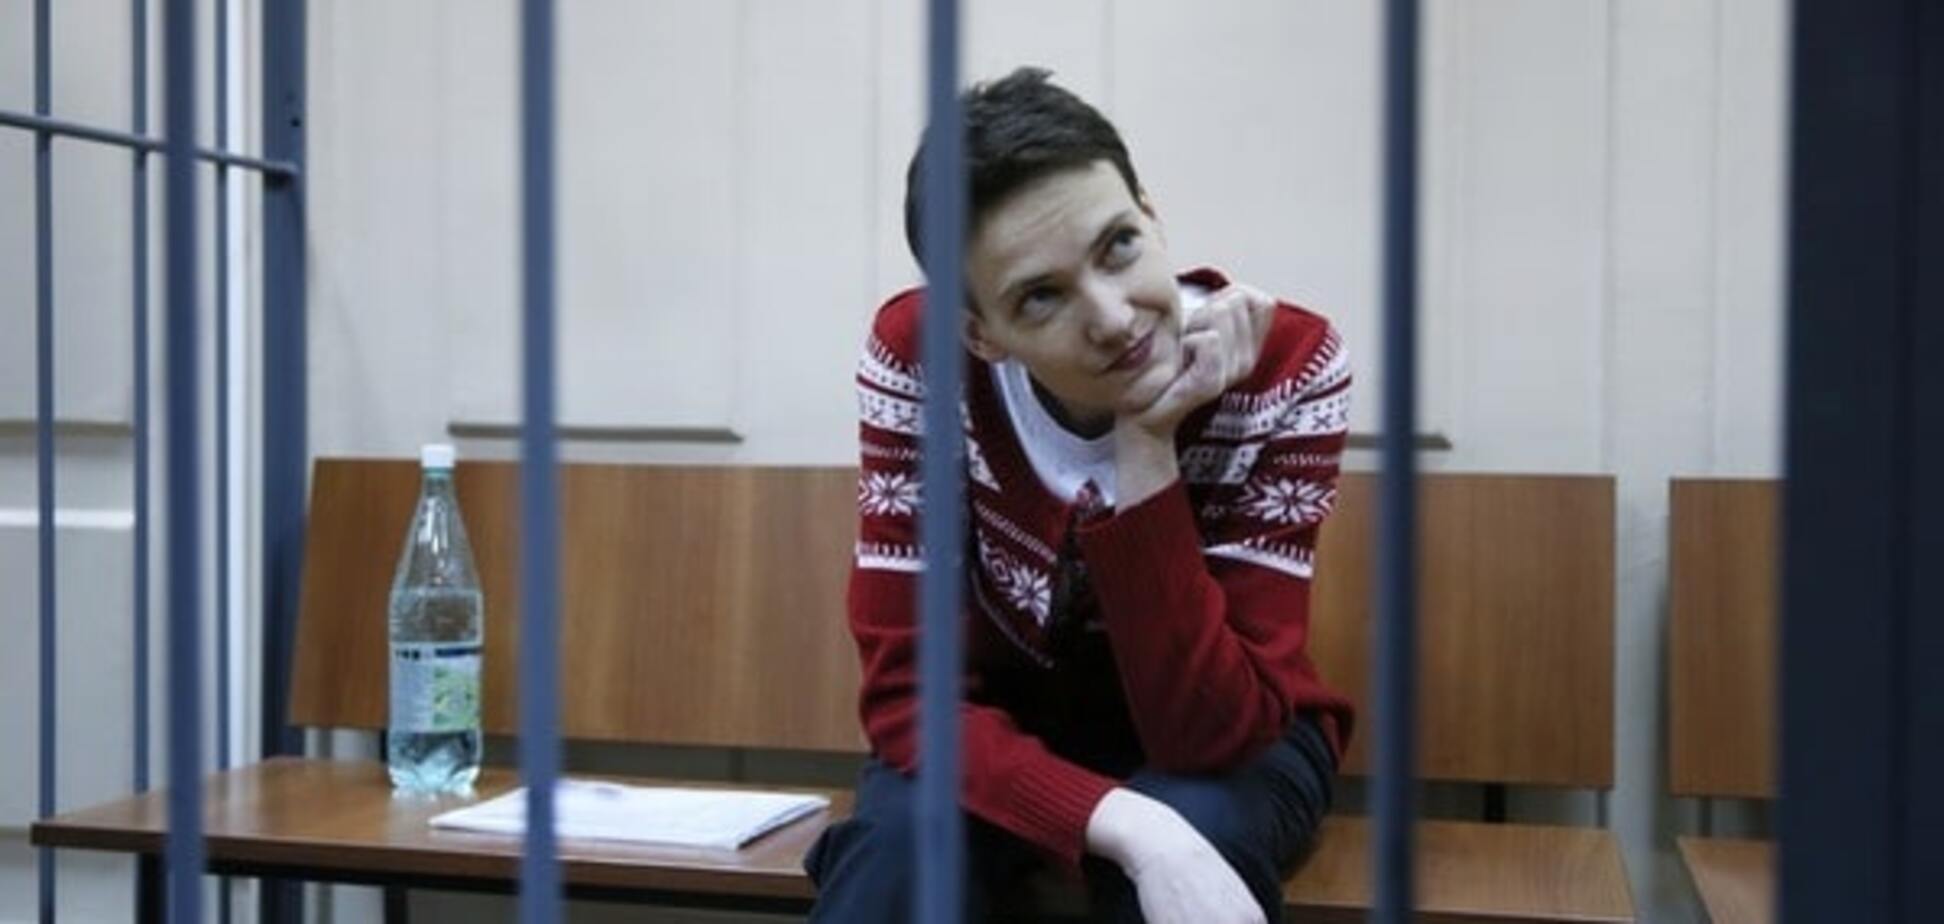 Адвокат Савченко: сторону обвинения ждут 'неприятные сюрпризы'